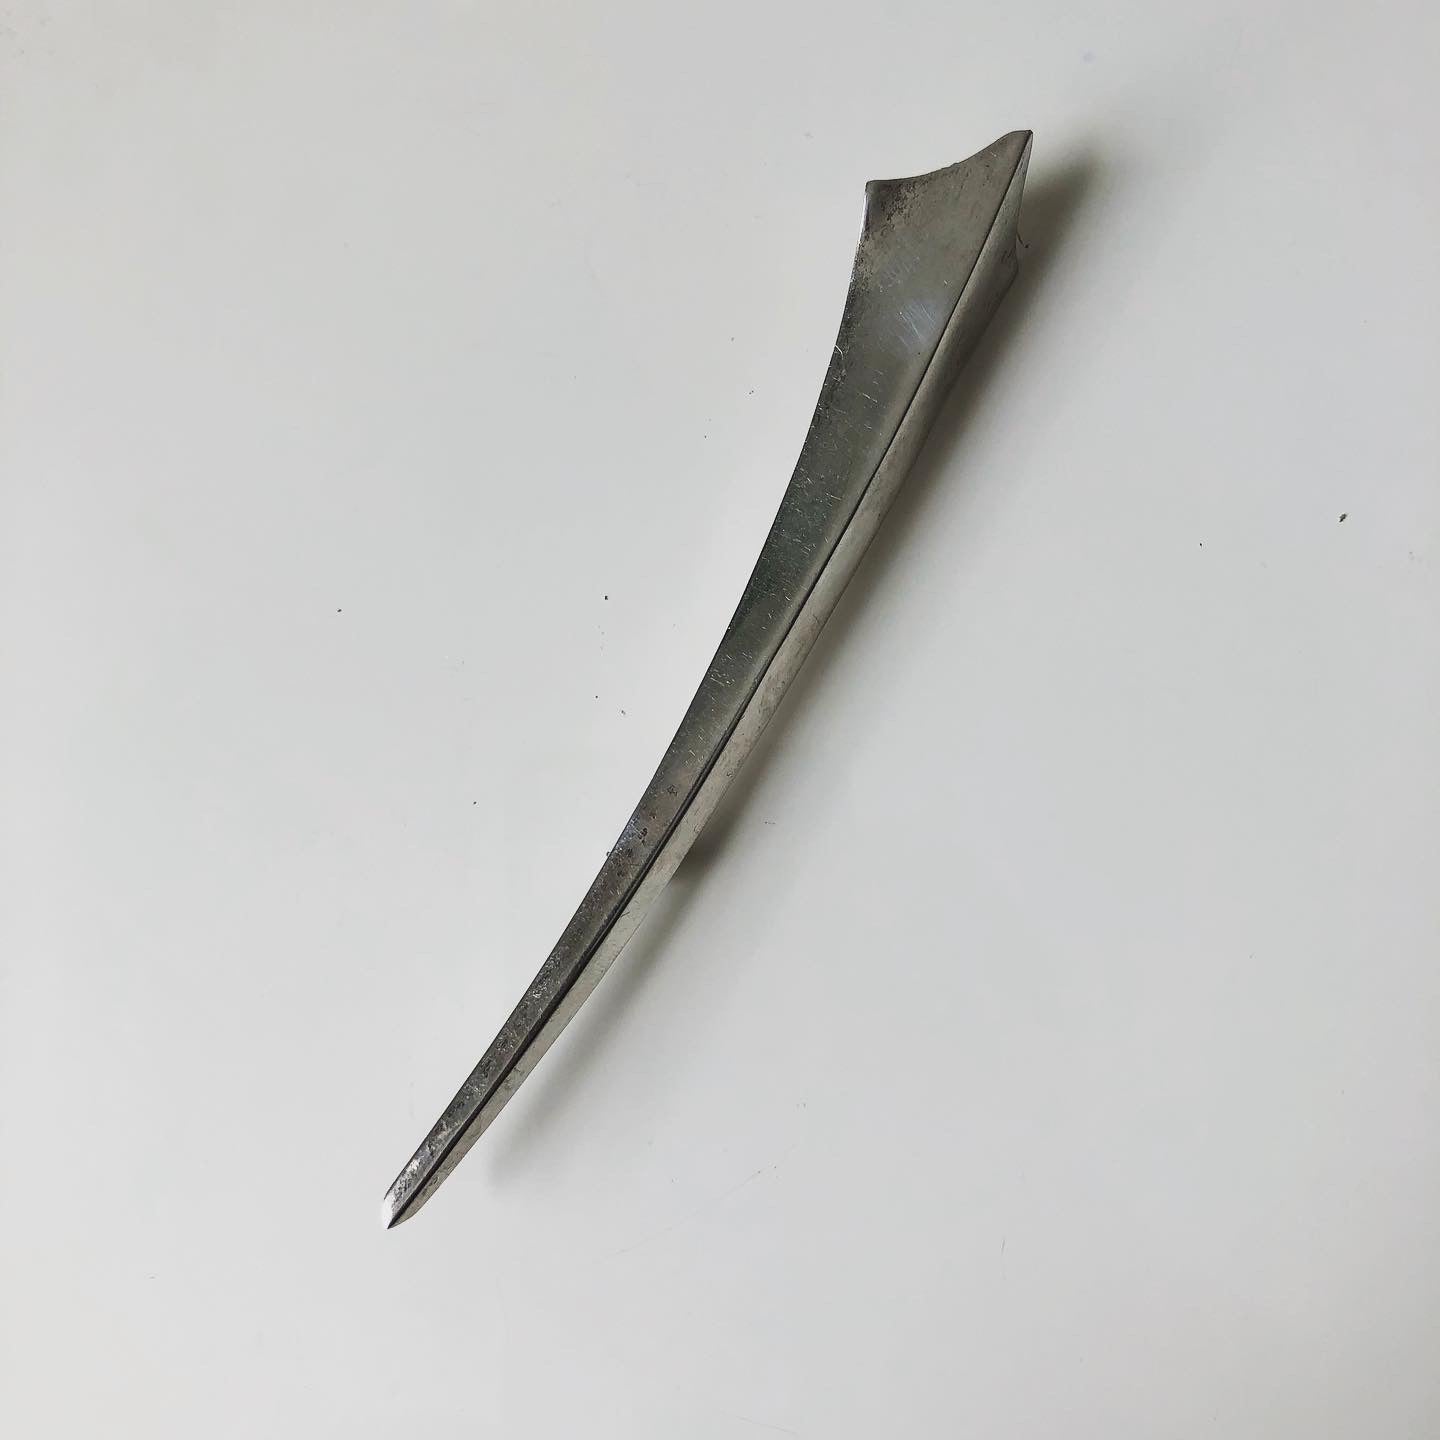 Sword pin